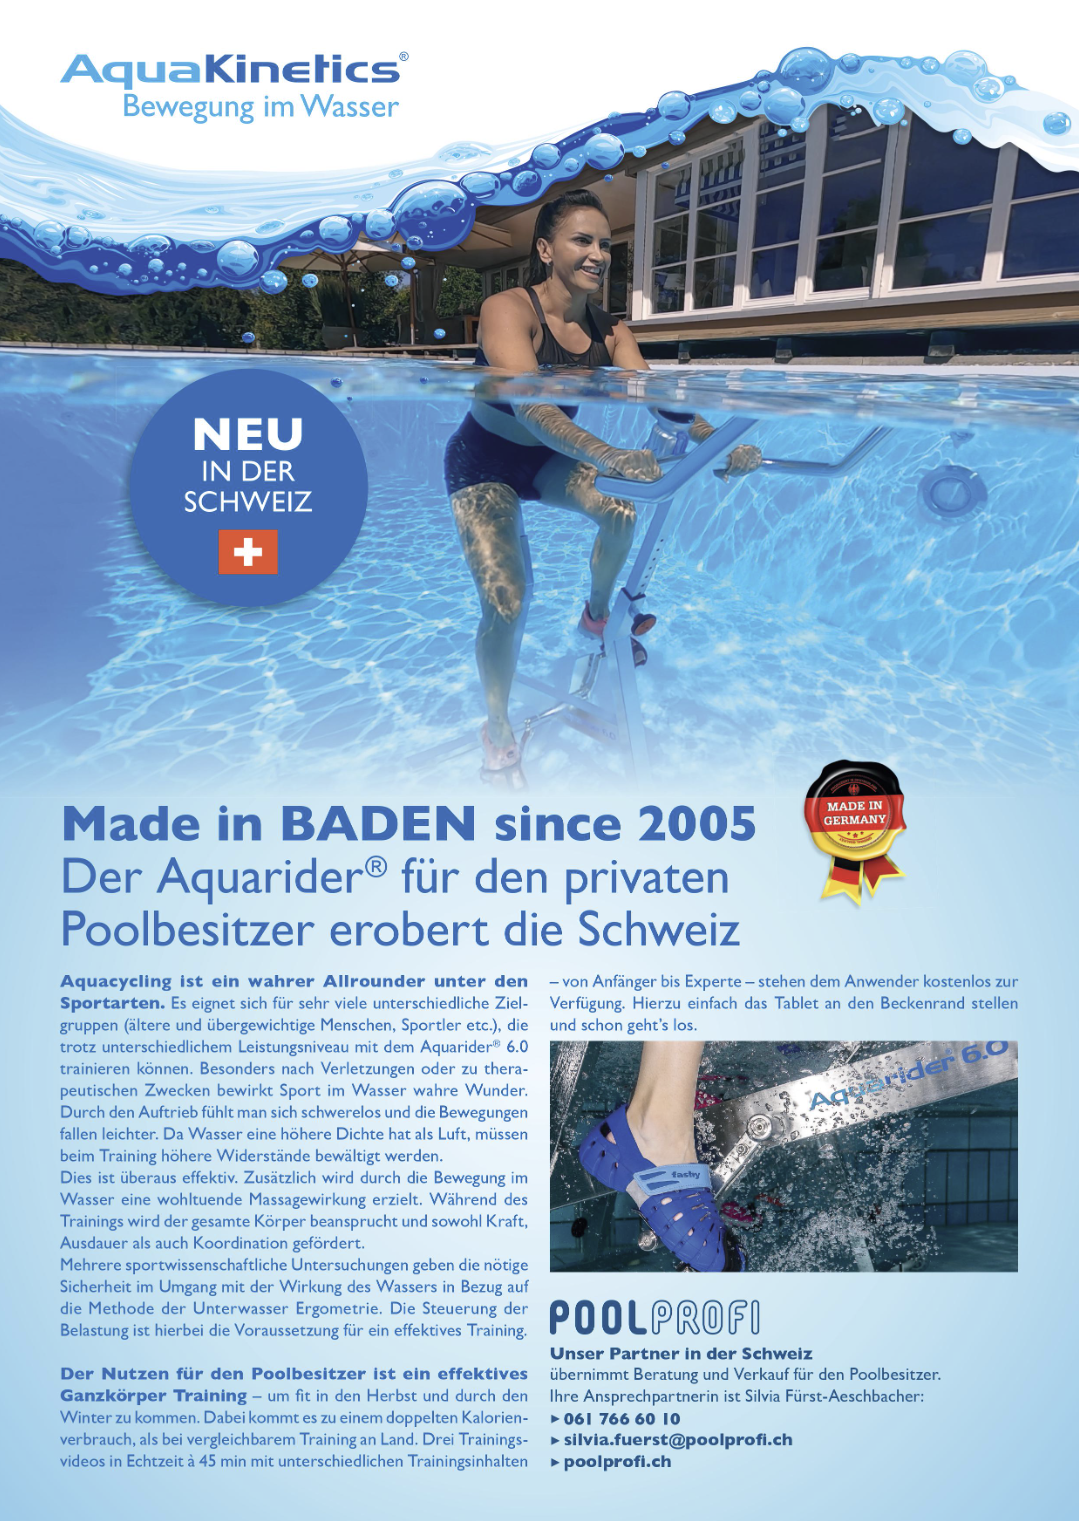 Der Aquarider® für den privaten Poolbesitzer erobert die Schweiz